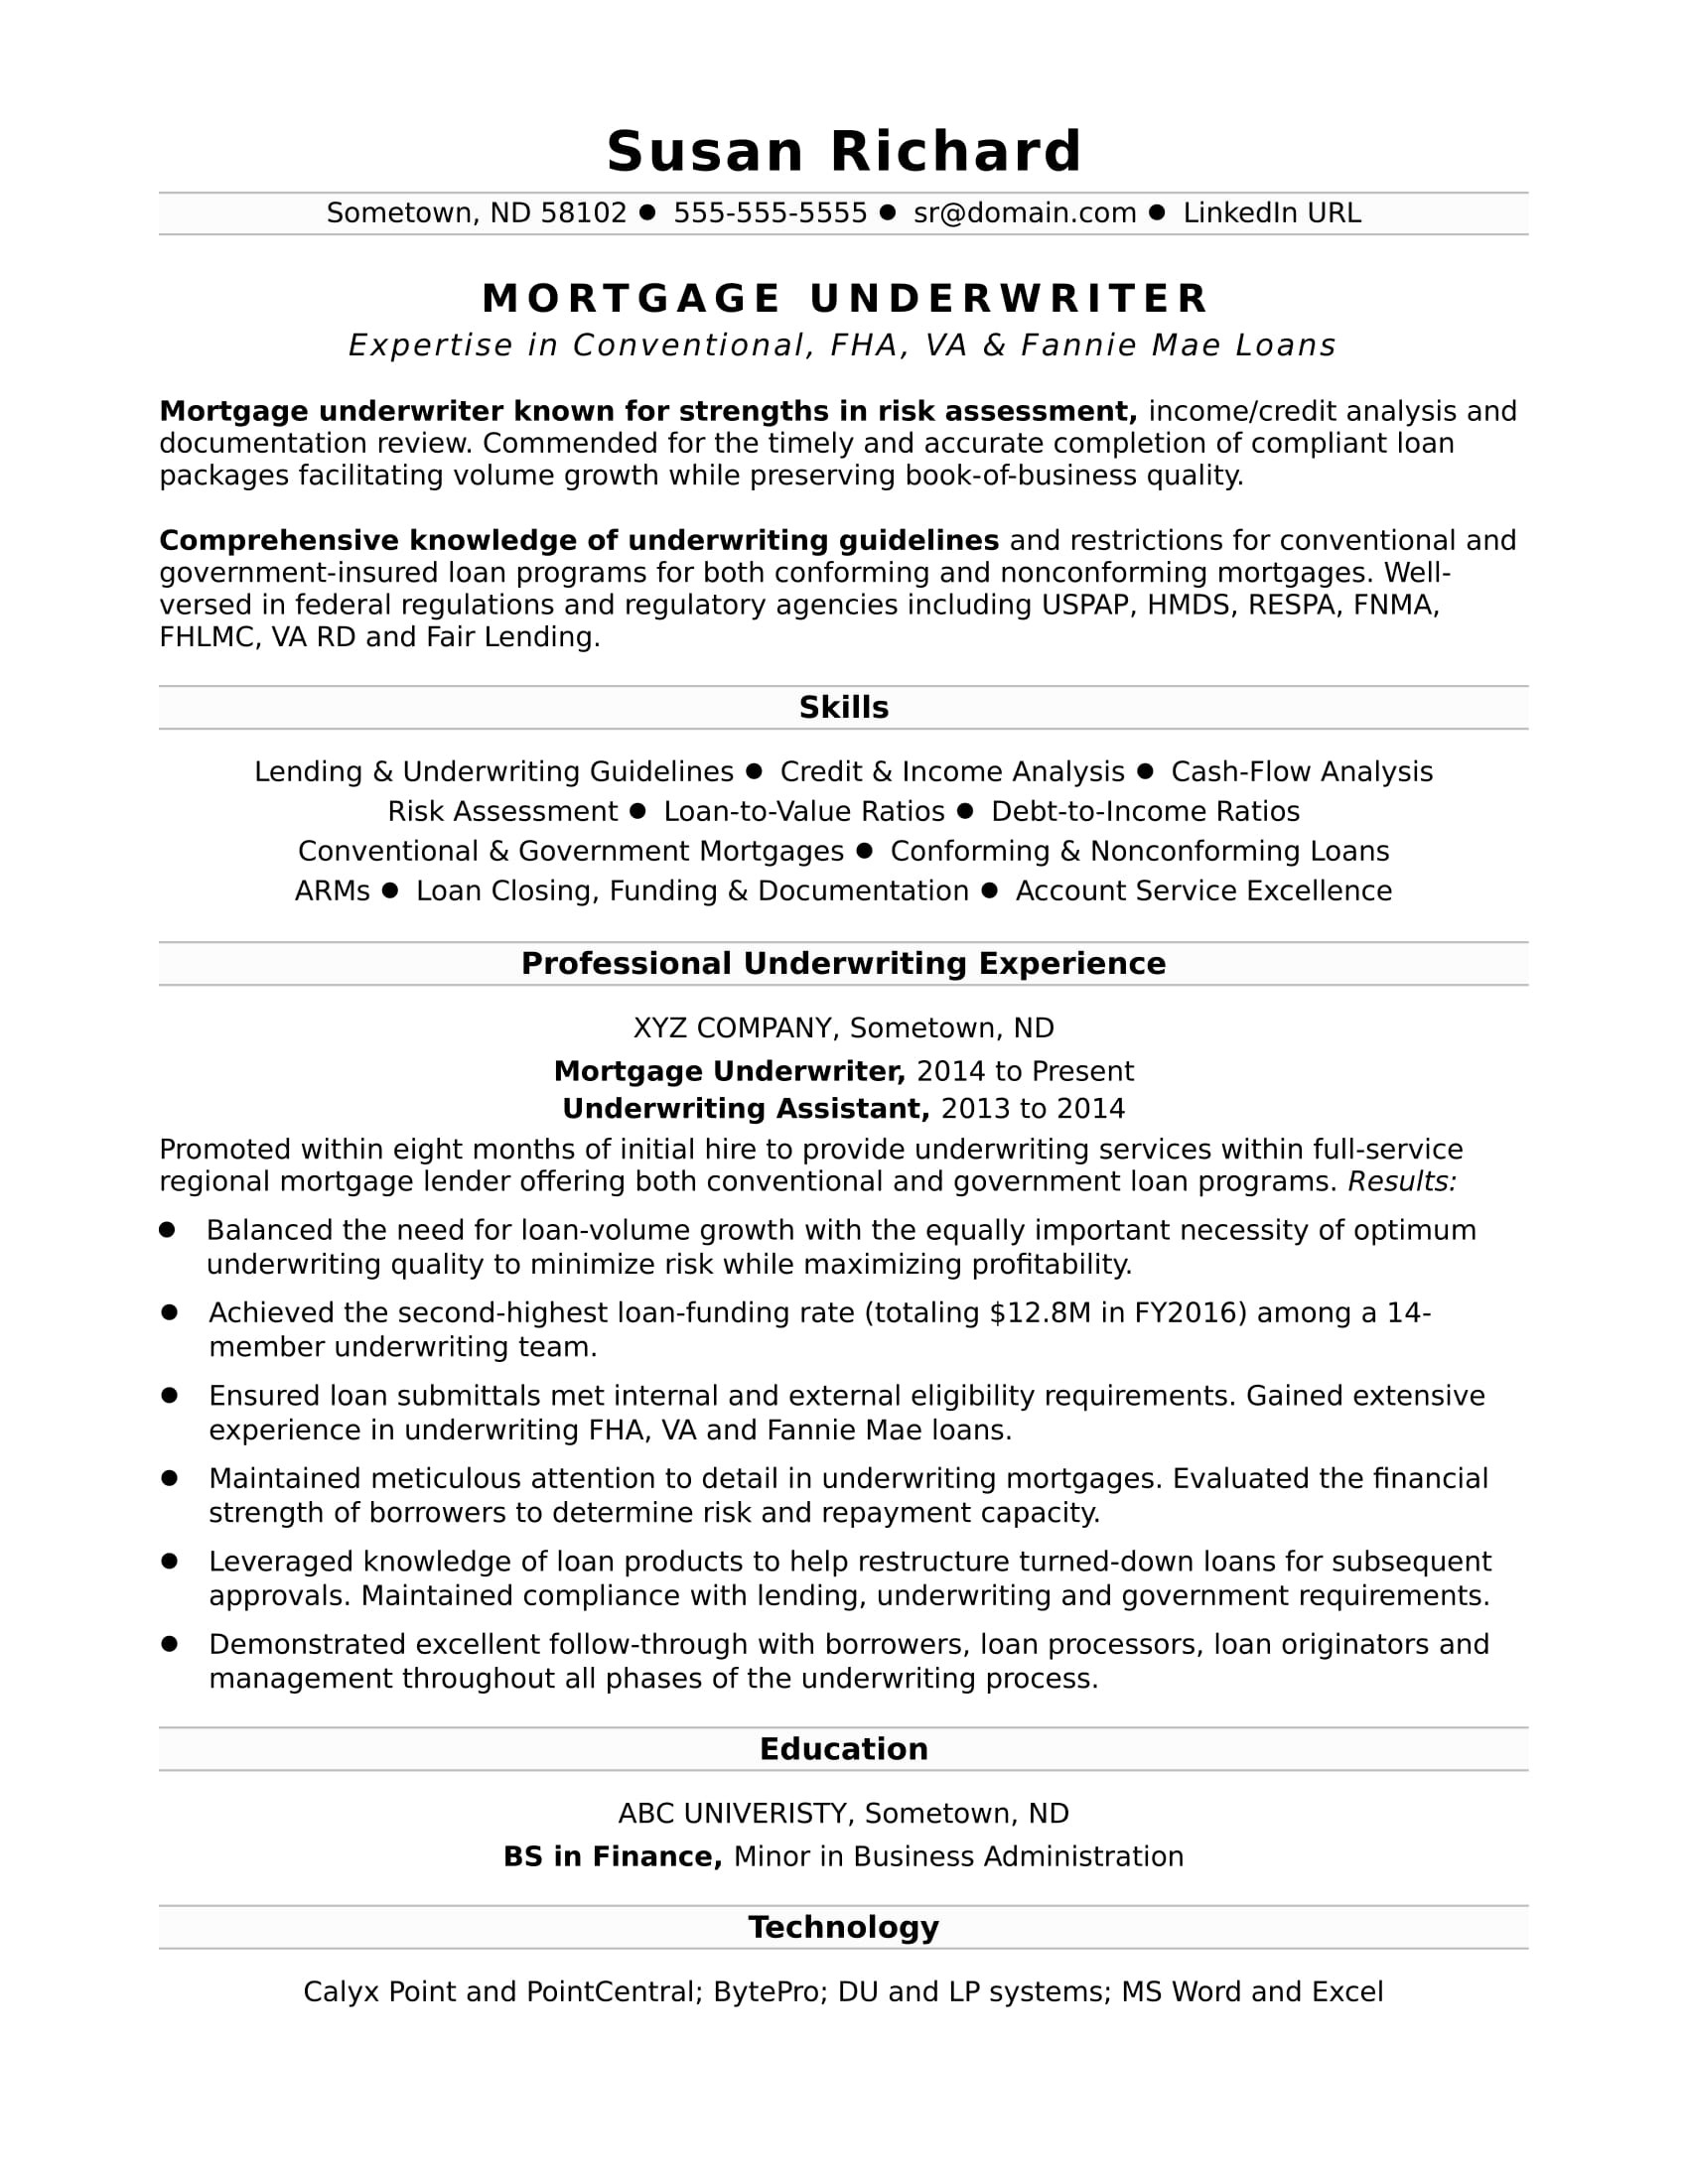 Sample Resume for Senior Mortgage originator Mortgage Underwriter Resume Sample Monster.com